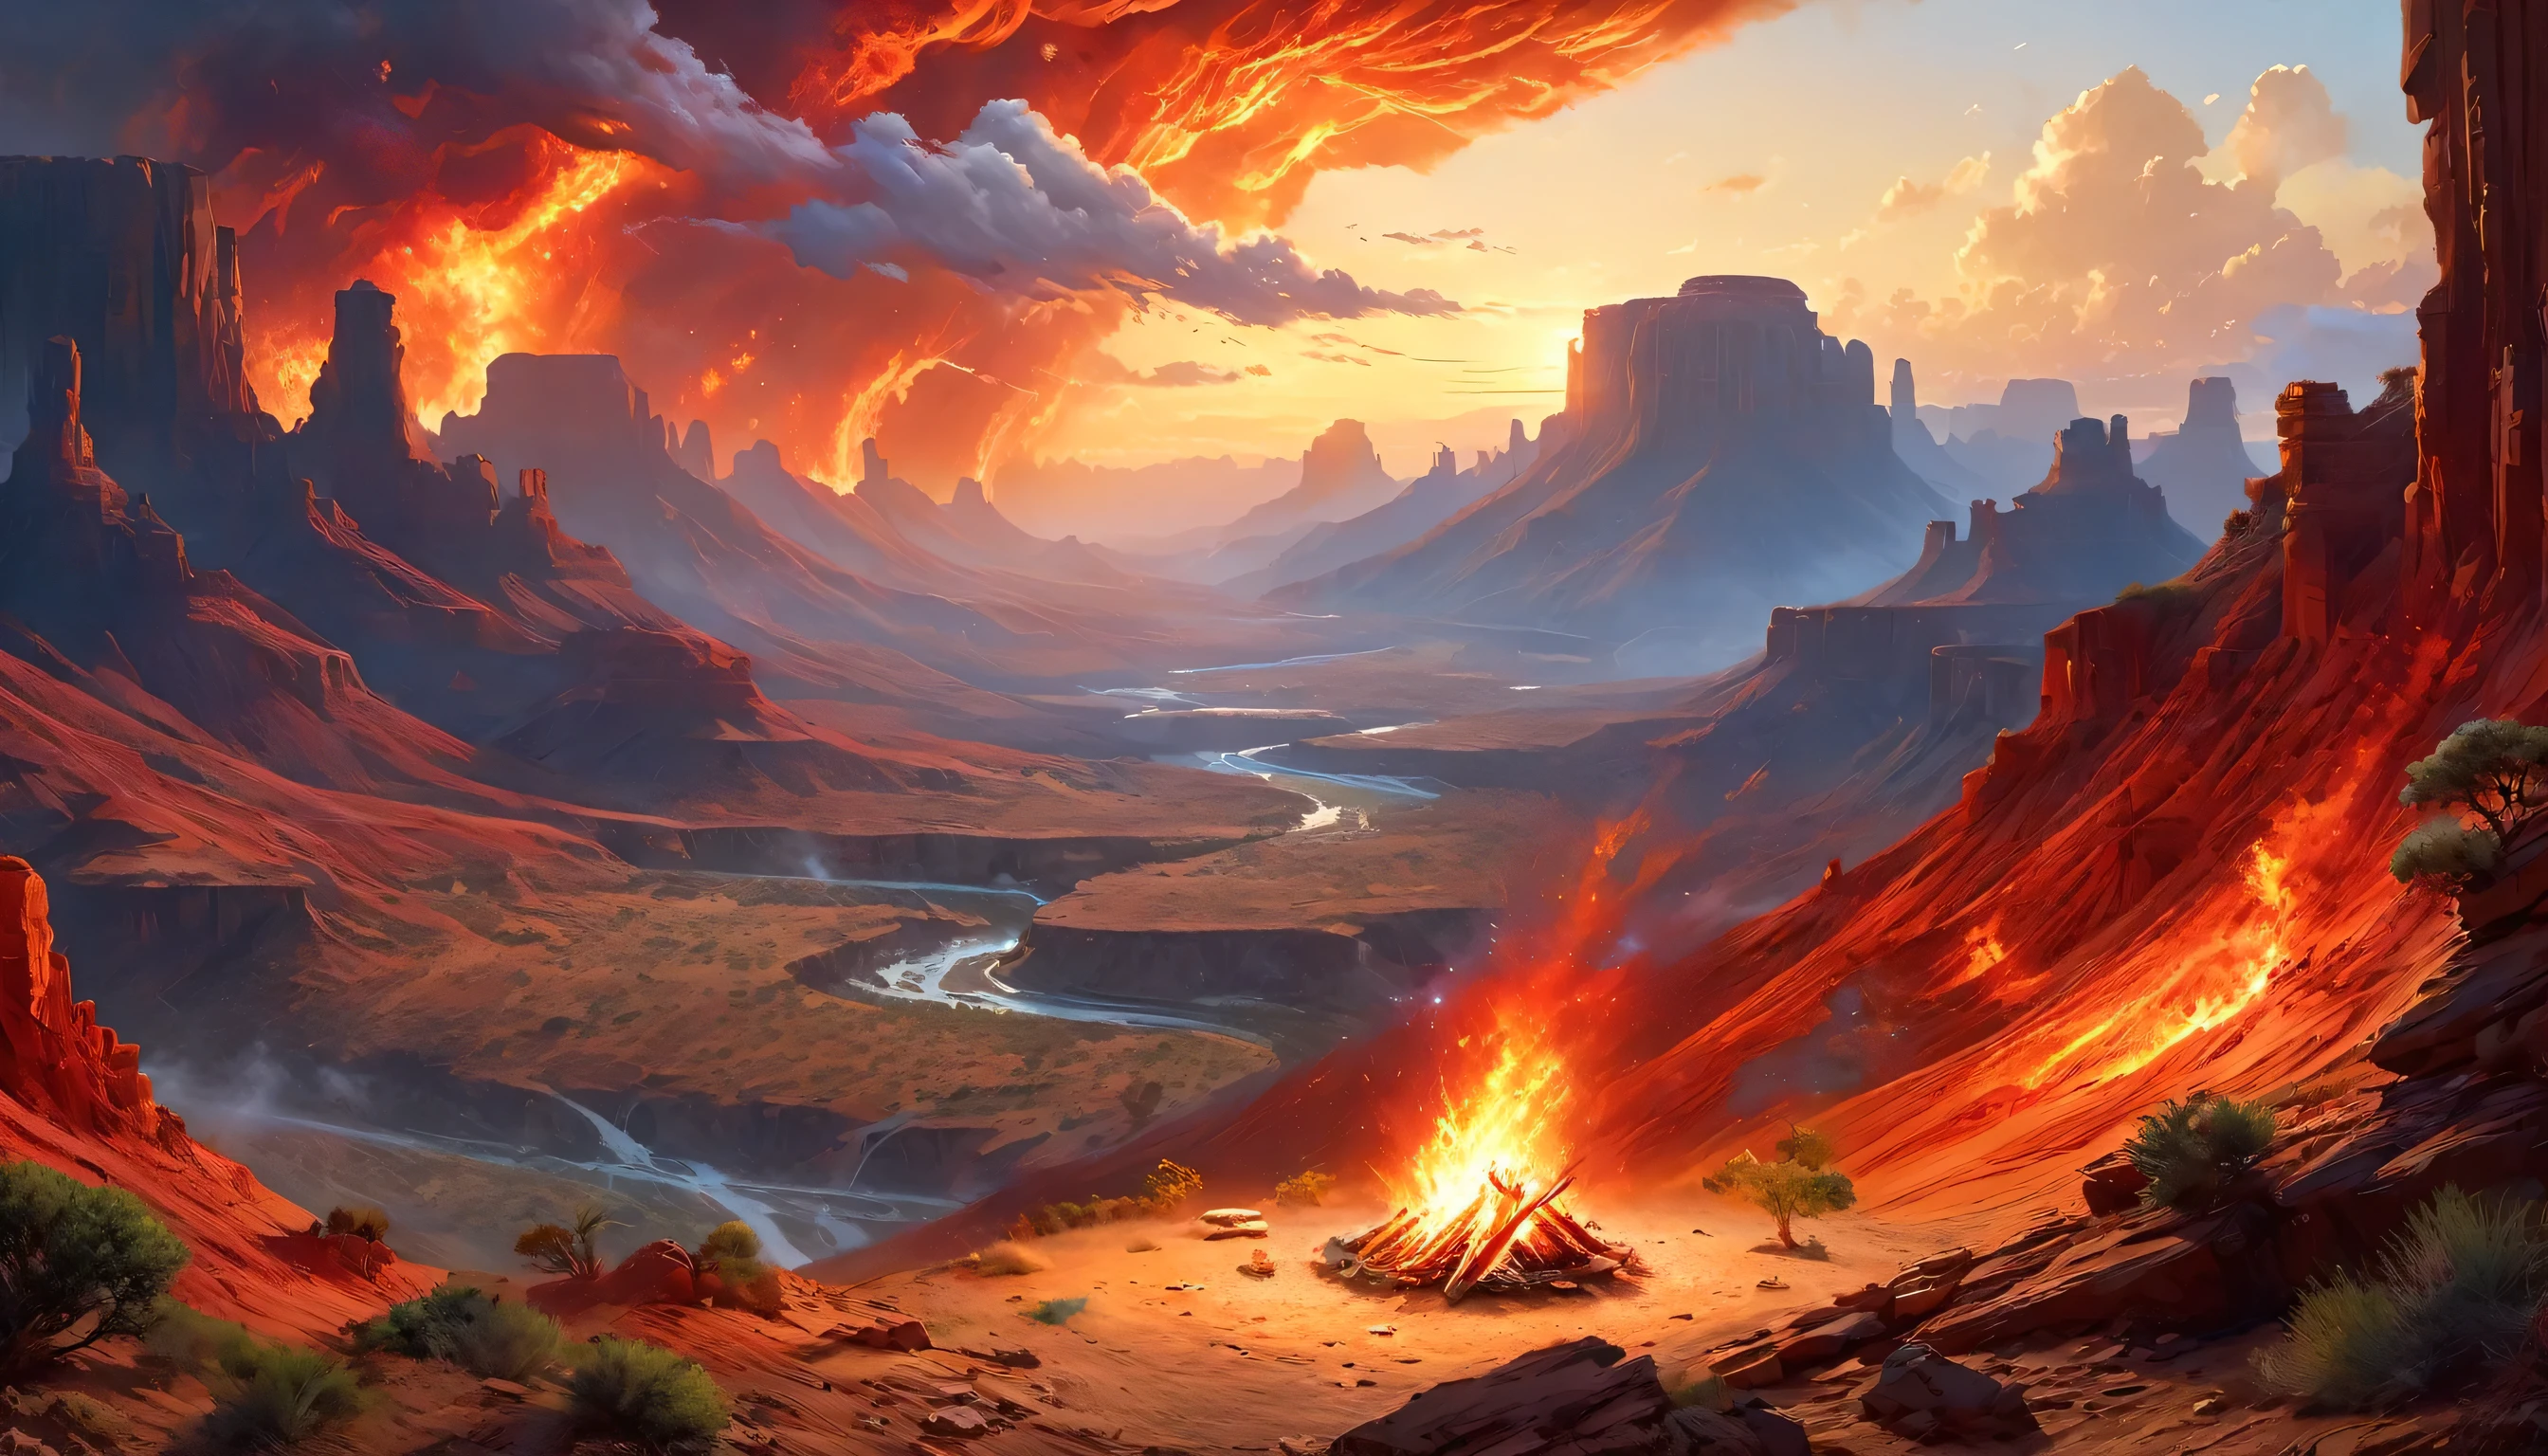 Arafed, une photo d&#39;un camping (Tente: 1.2) et petit (feu de camp: 1,2), au sommet d&#39;une montagne déserte, son coucher de soleil, le ciel est dans différentes nuances de  (rouge: 1.1), (orange: 1.1), (Azur: 1.1) (violet:1.1) il y a de la fumée qui s&#39;élève du camp de pompiers, il y a une vue magnifique sur le canyon et les ravins du désert, il y a des arbres rares à l&#39;horizon, c&#39;est un moment de sérénité, paix, et détente, meilleure qualité, 16k,  photoréalisme, Séance photo primée par le National Geographic, plan ultra large, nébuleuse enragée, ombre de dame